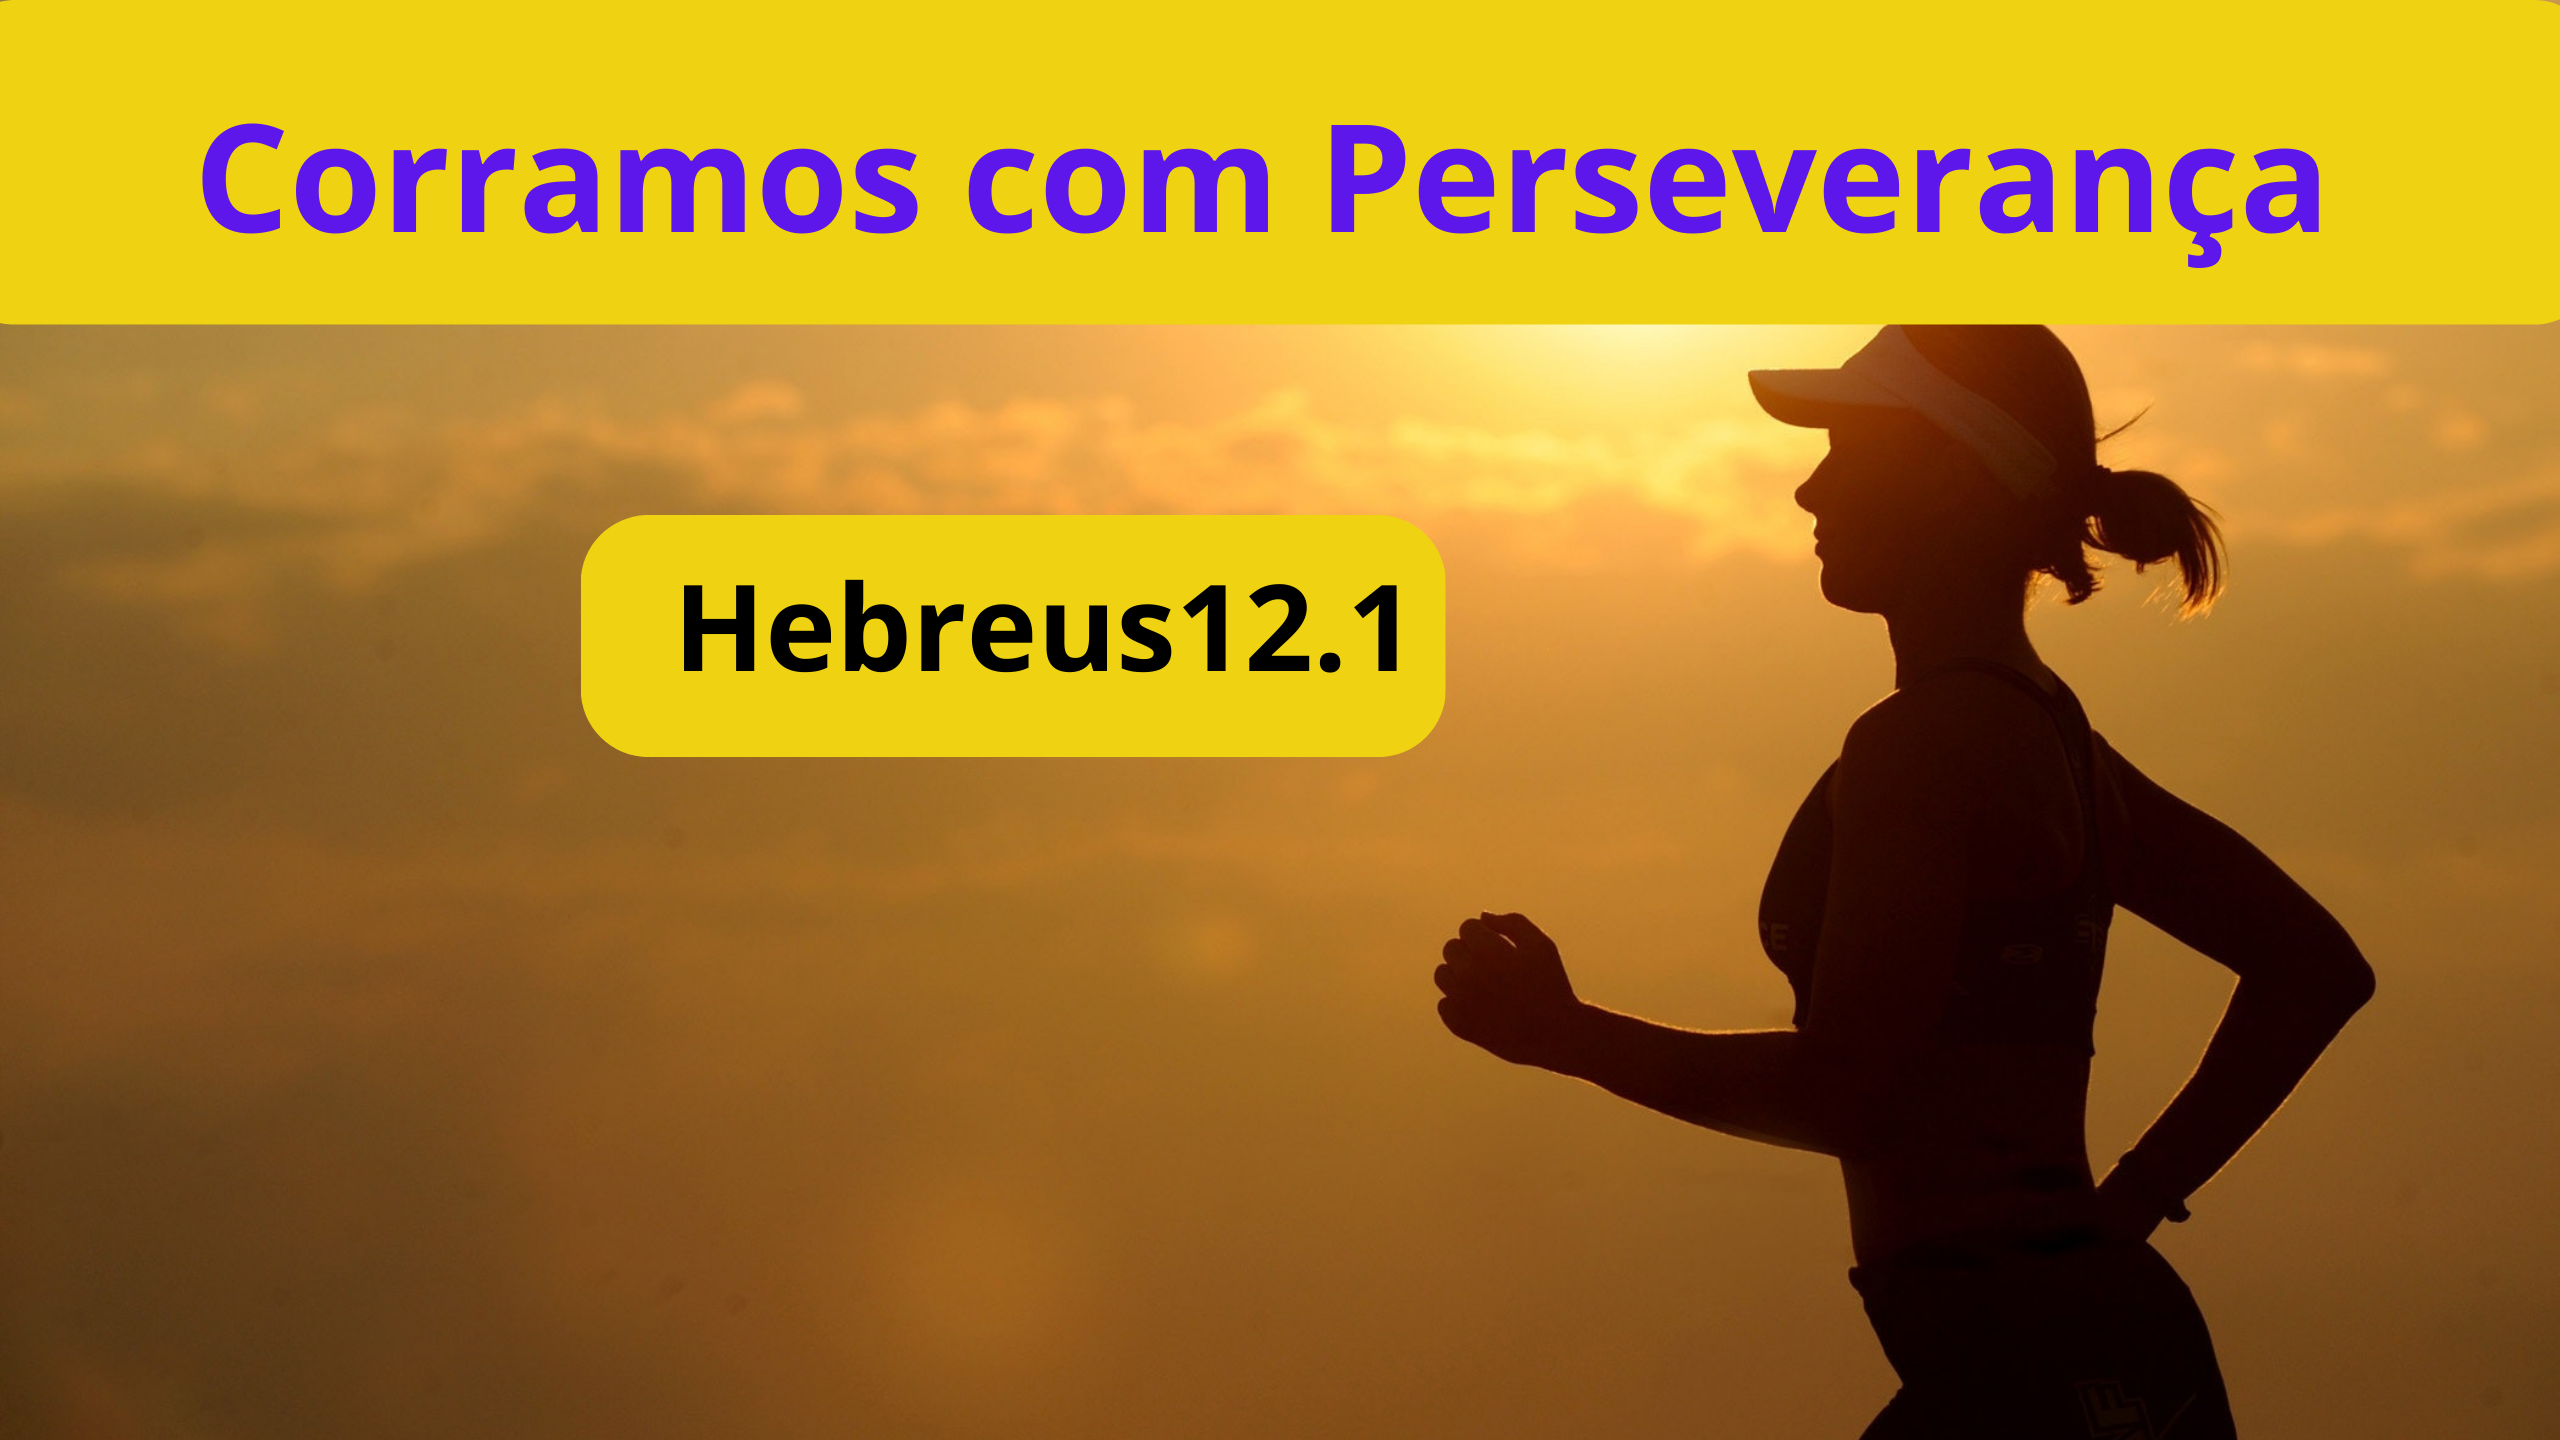 corramos com perseveranca Hebreus12.1 - Quem é esta nuvem de testemunha de Hebreus 12.1